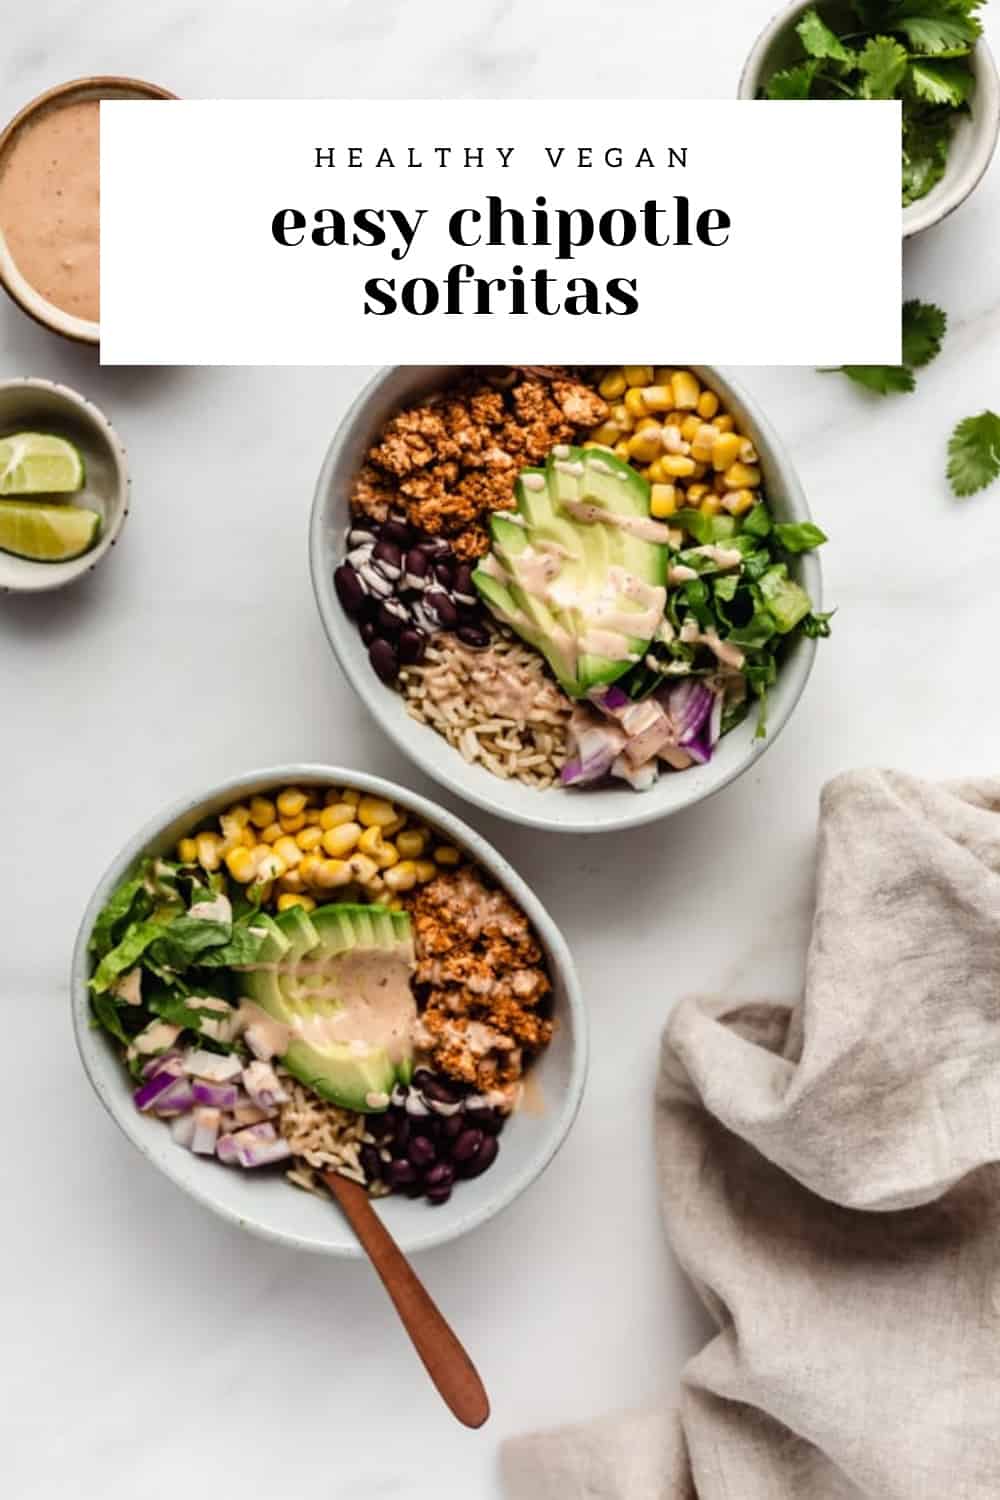 Copycat Chipotle Sofritas Recipe - Choosing Chia